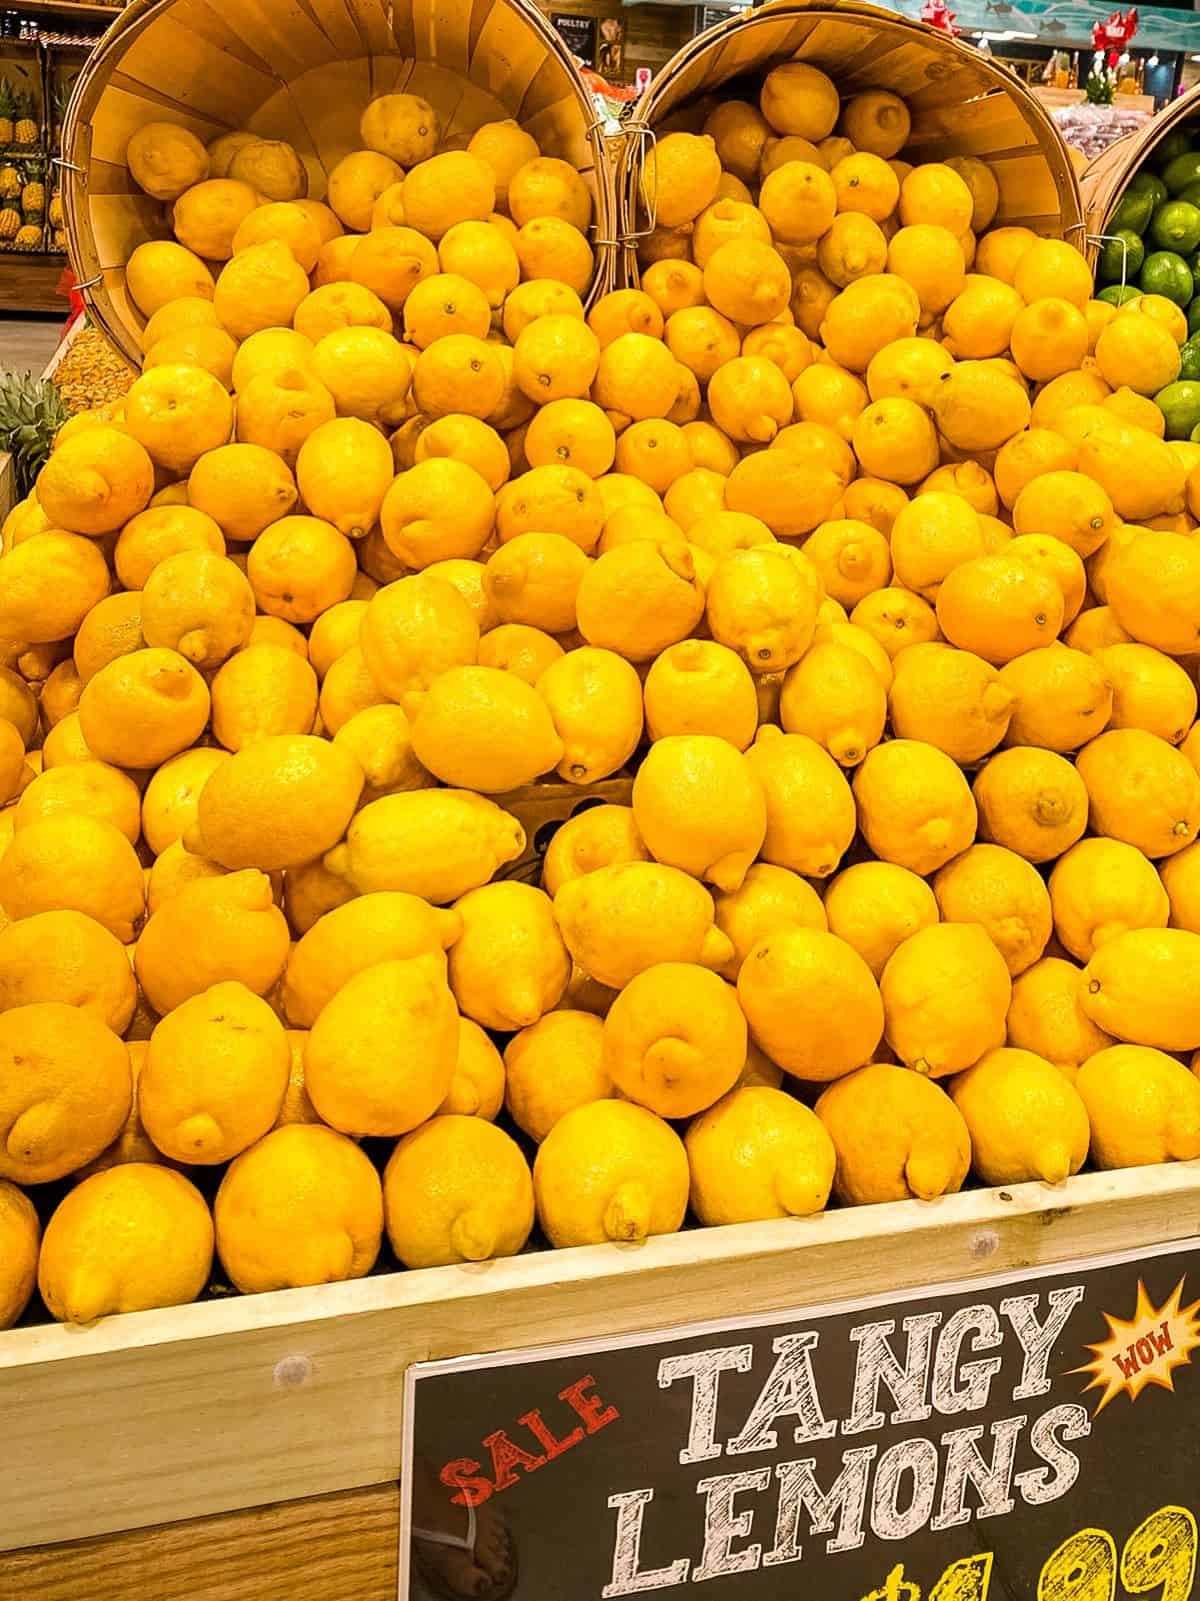 Lemons on display in supermarket.